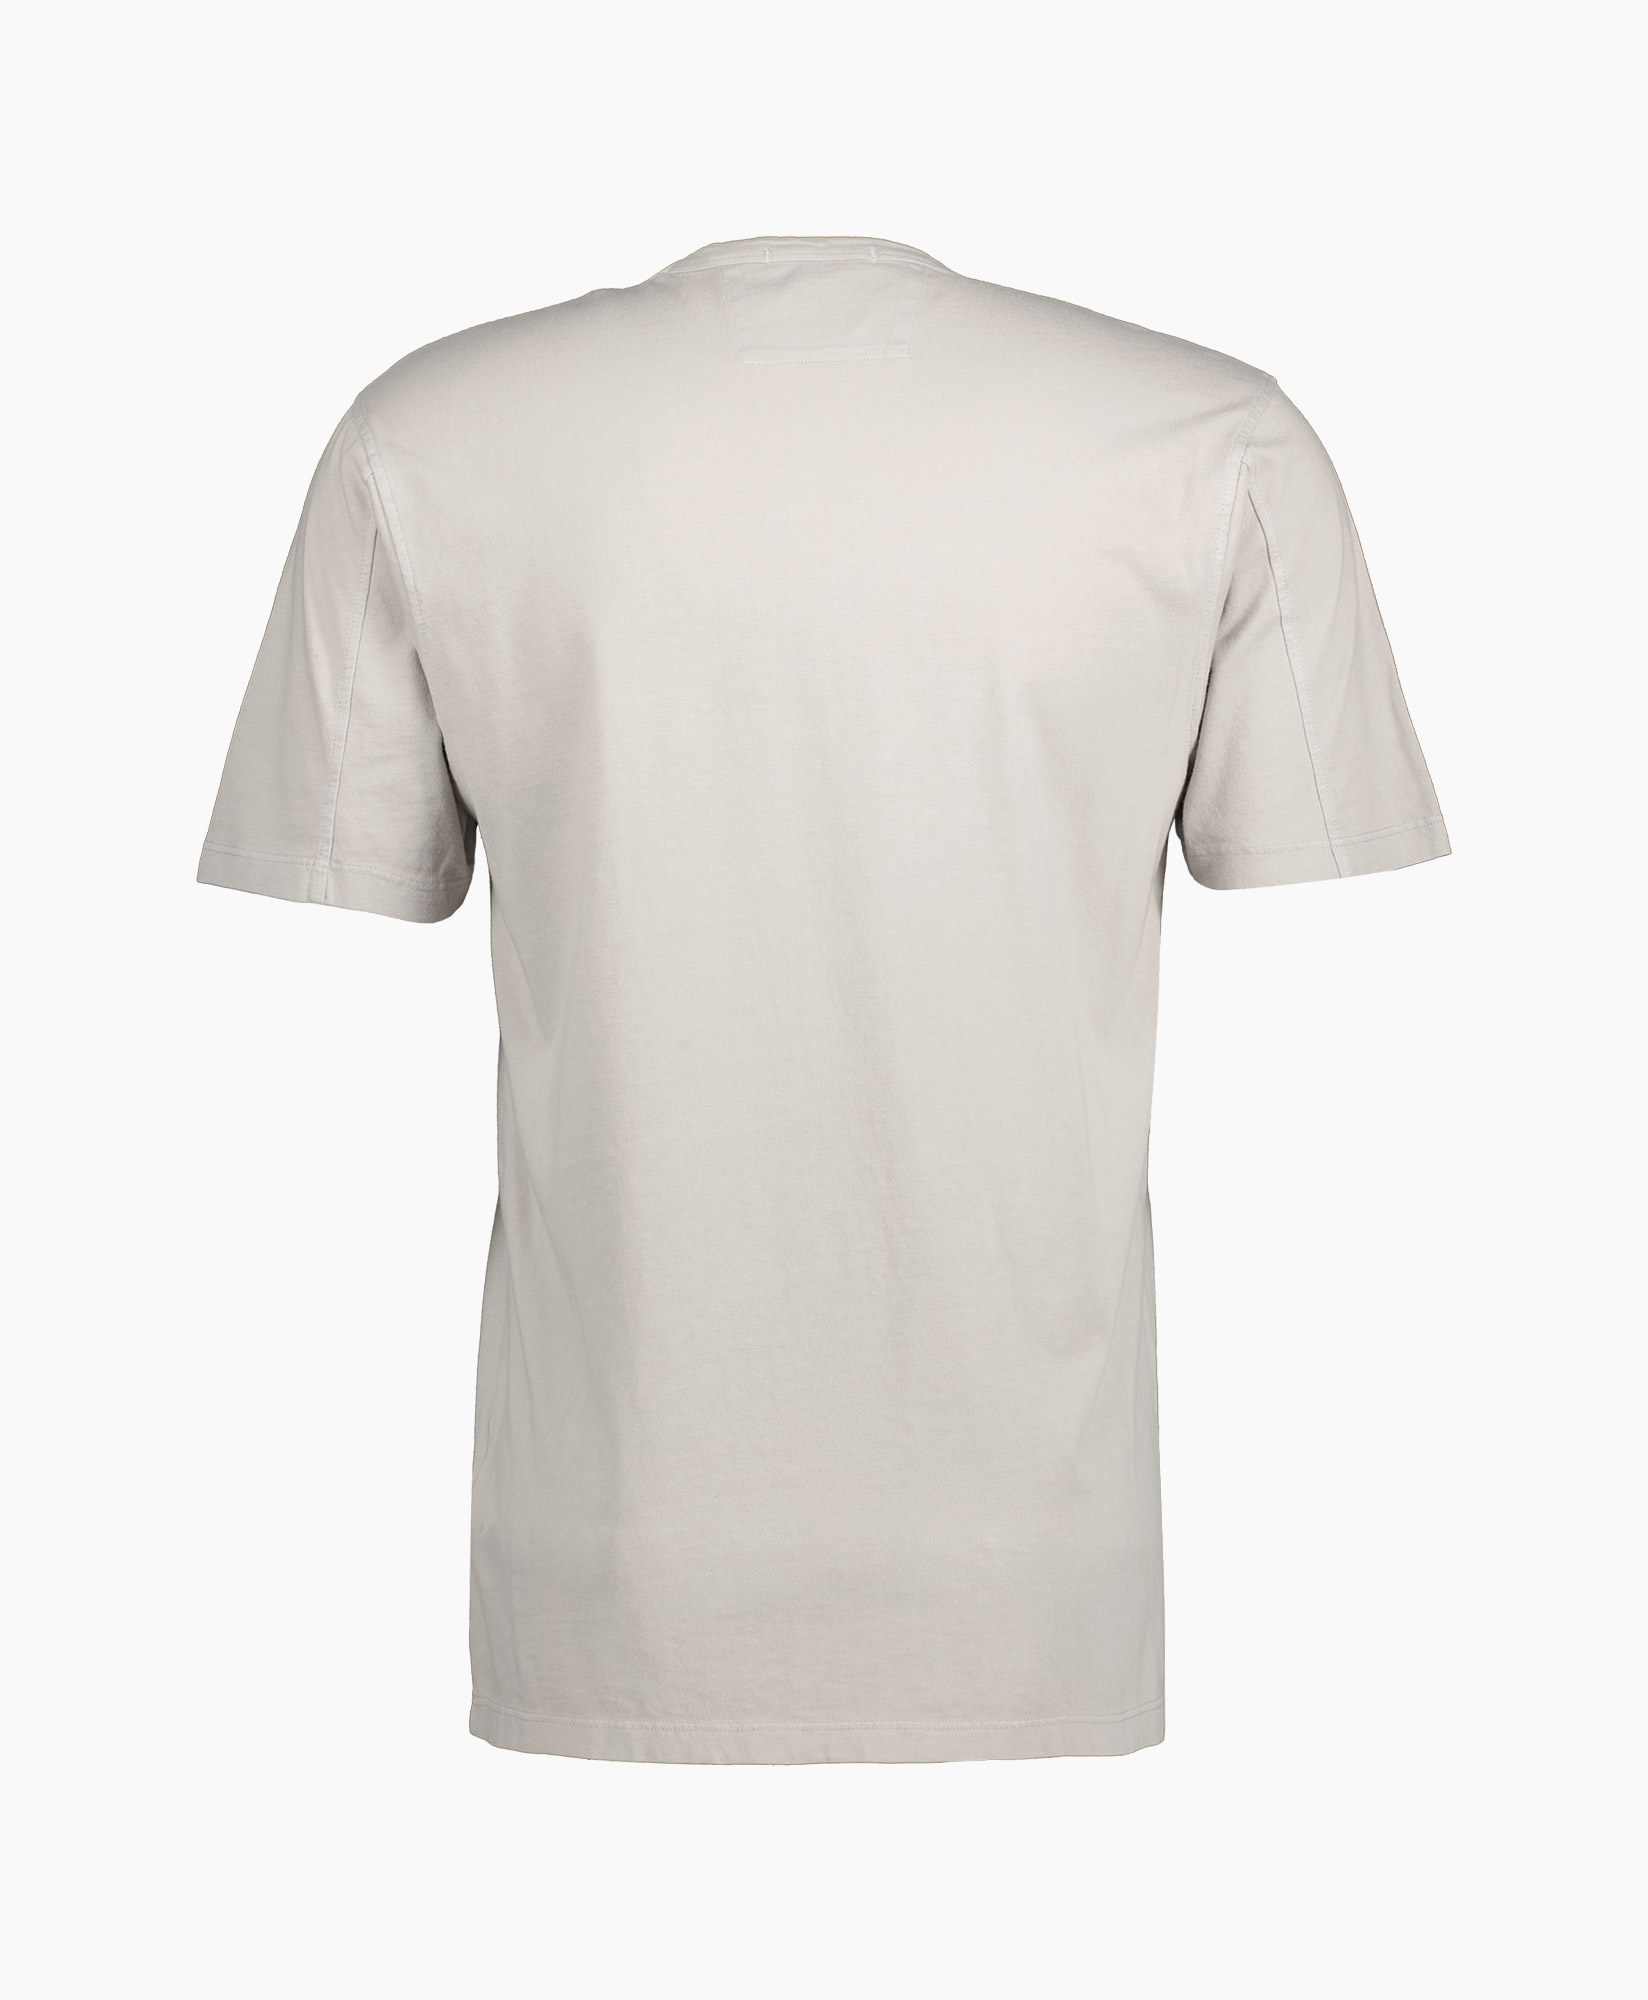 Cp Company T-shirt S182a-005431r Grijs